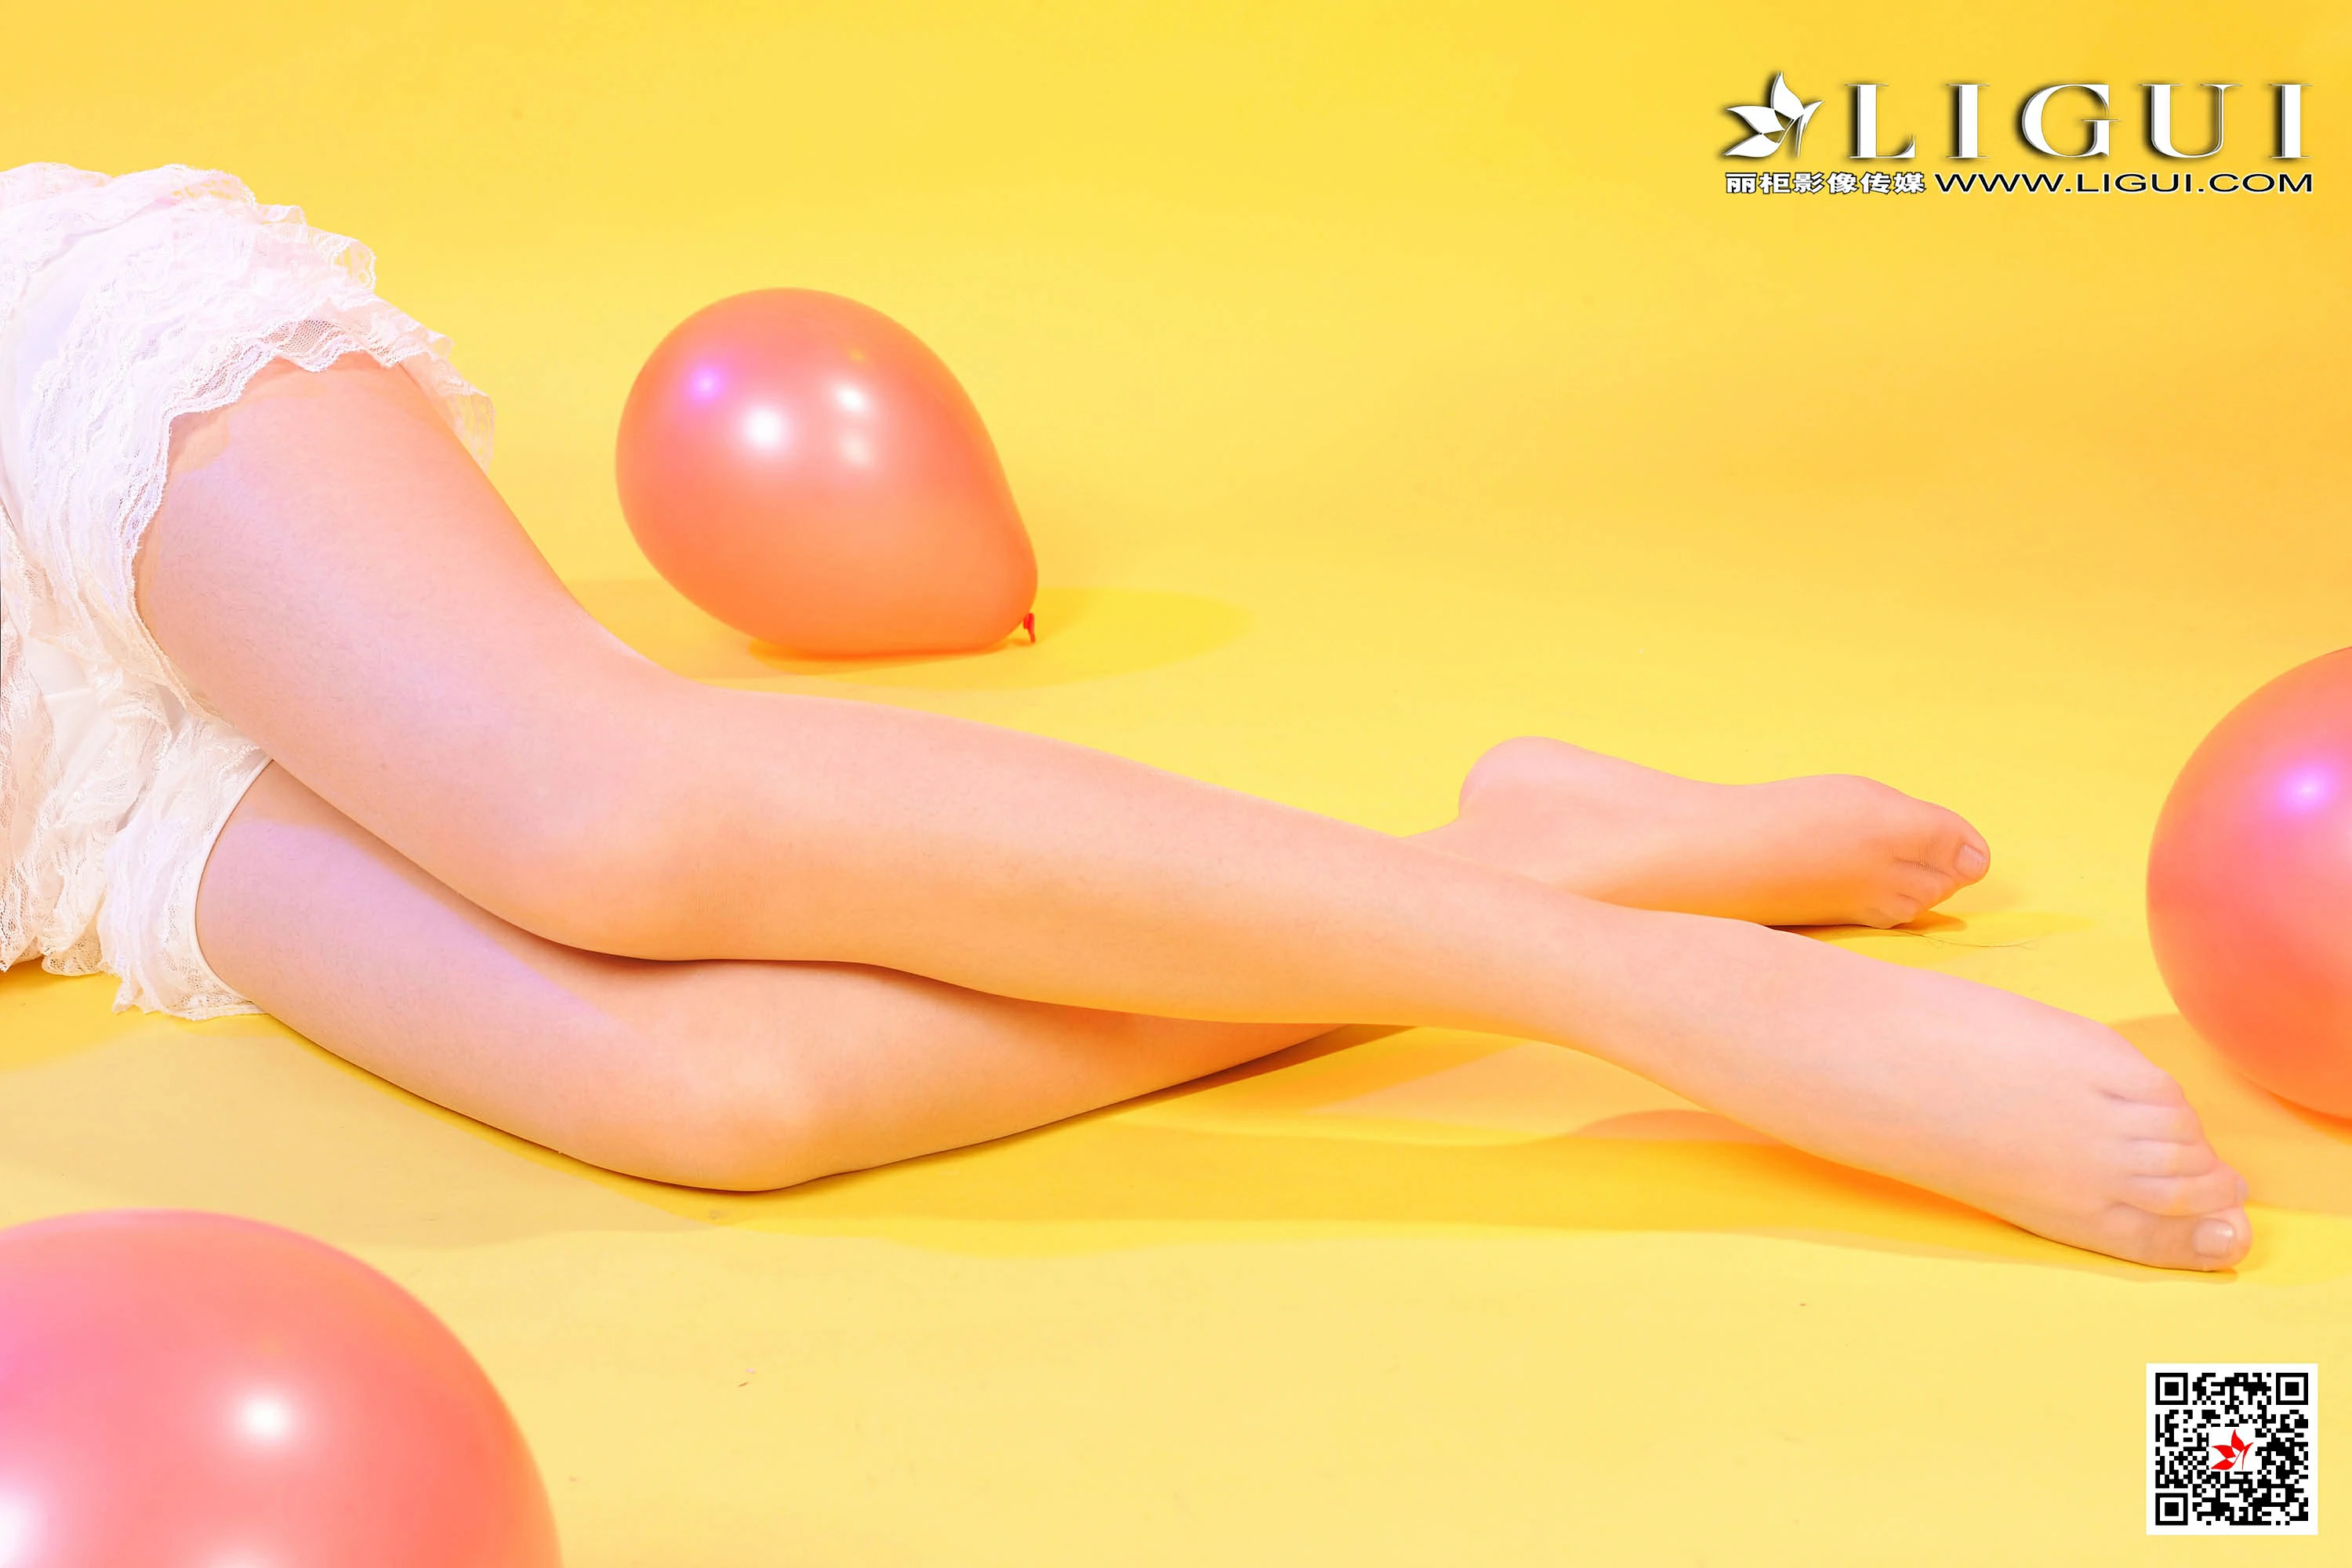 [Ligui丽柜会所]2020-06-18 Model 小杨幂 粉色镂空连衣裙与白色蕾丝短裤加肉色丝袜美腿性感私房写真集,